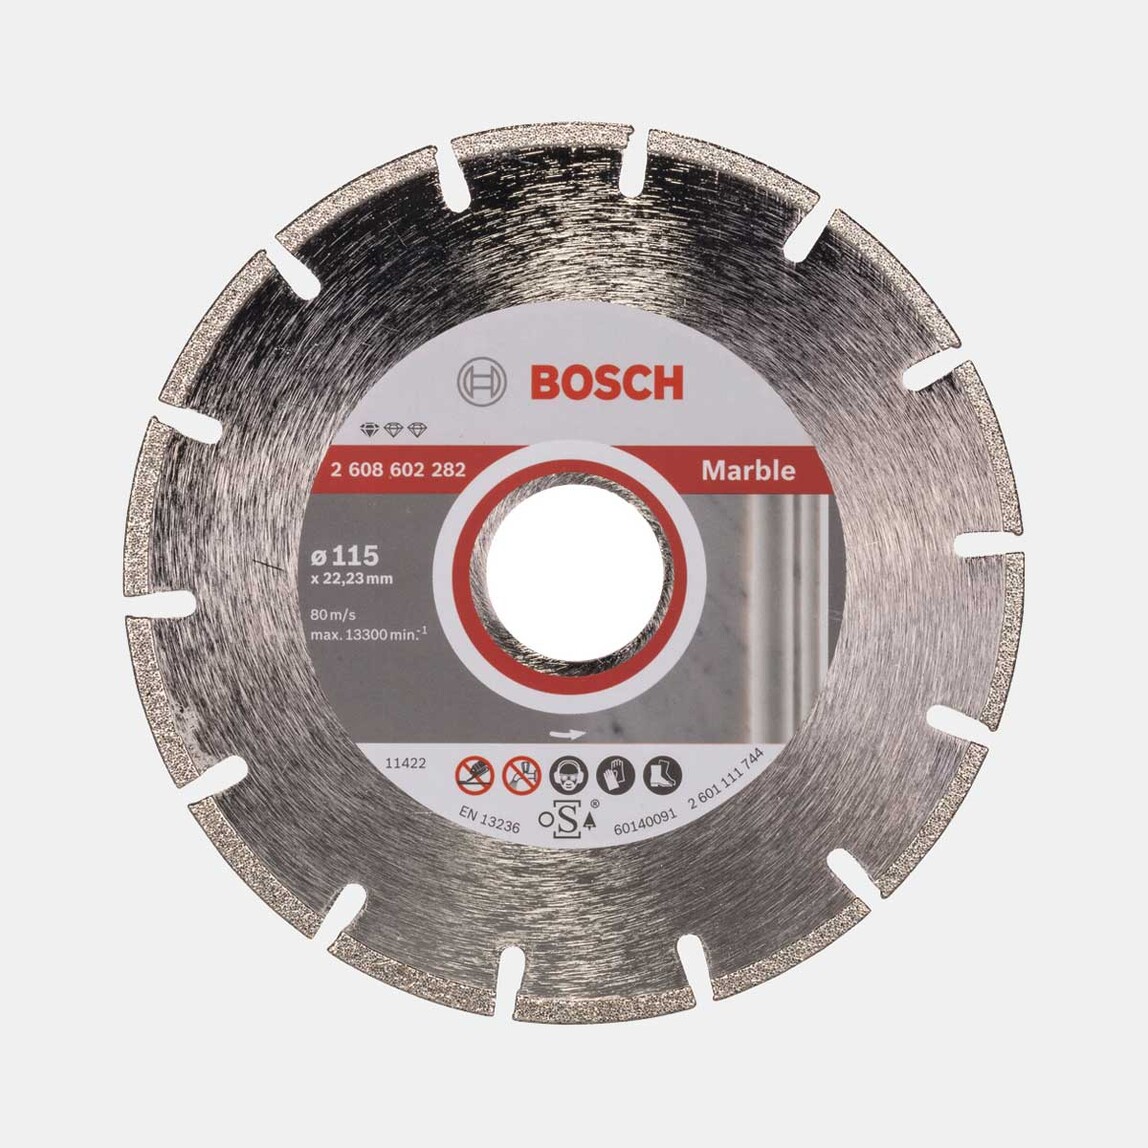    Bosch Elmas Disk  115 mm Standart For Marble  